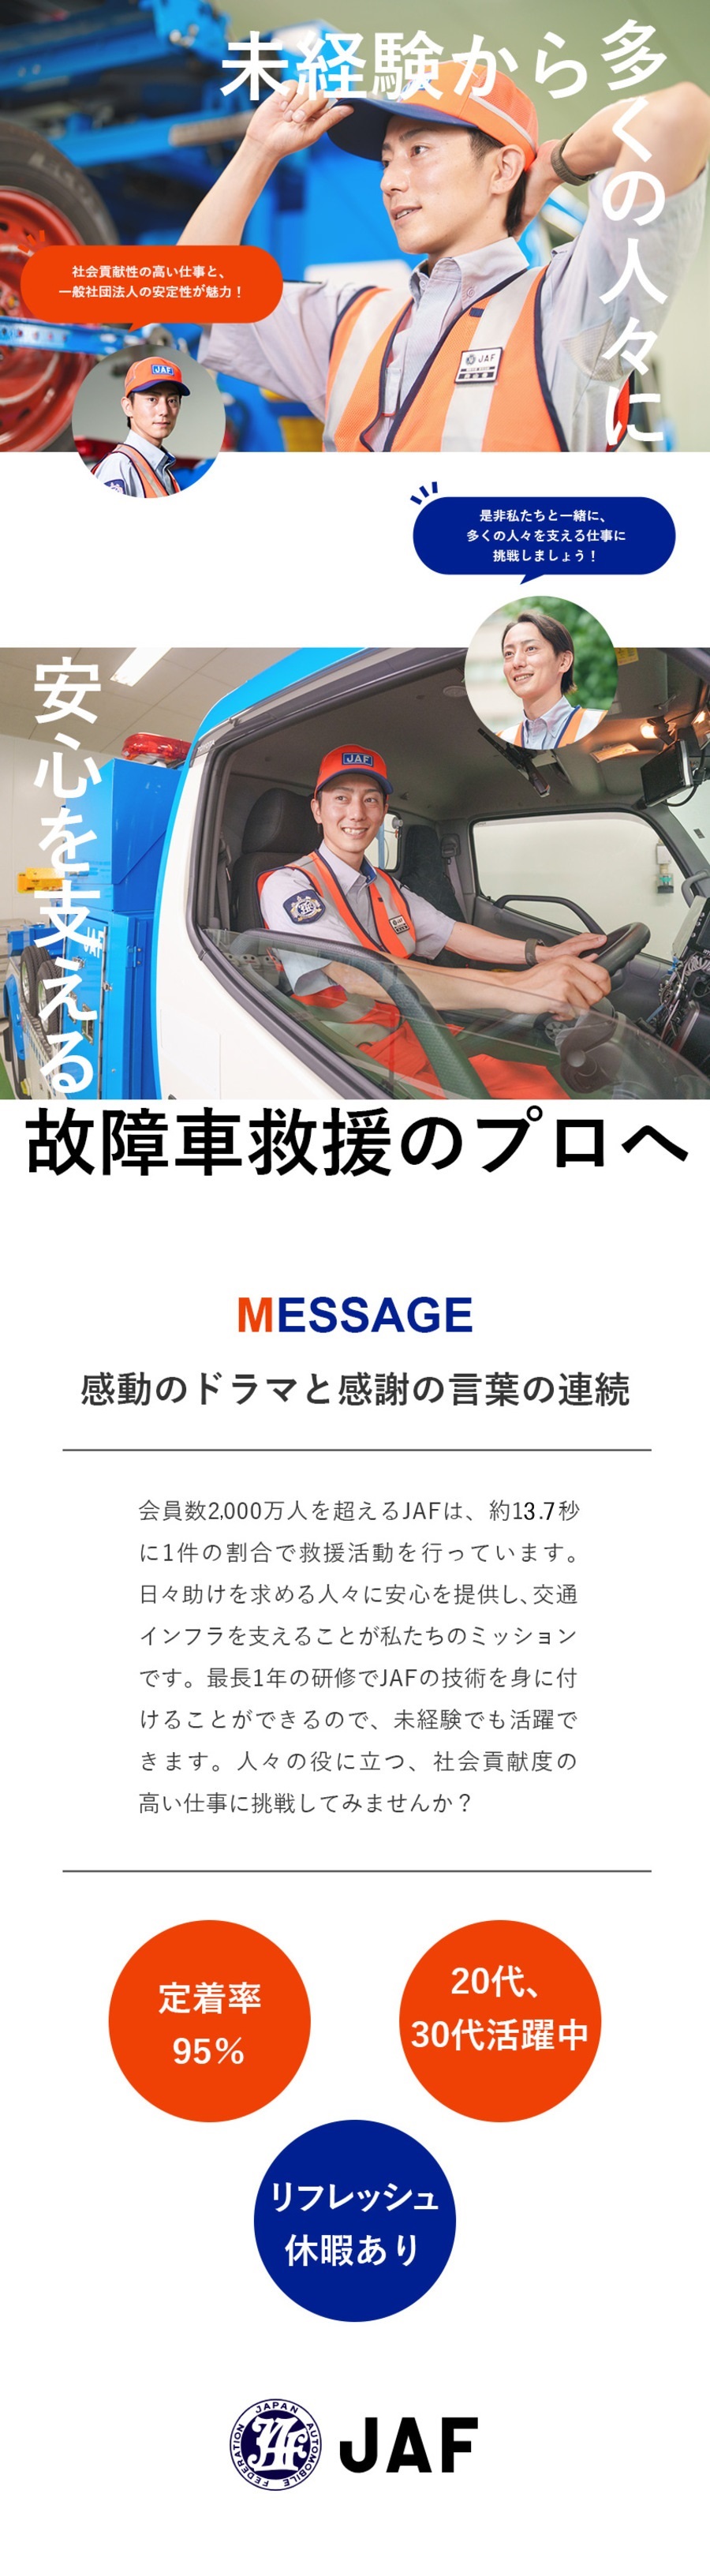  一般社団法人日本自動車連盟からのメッセージ